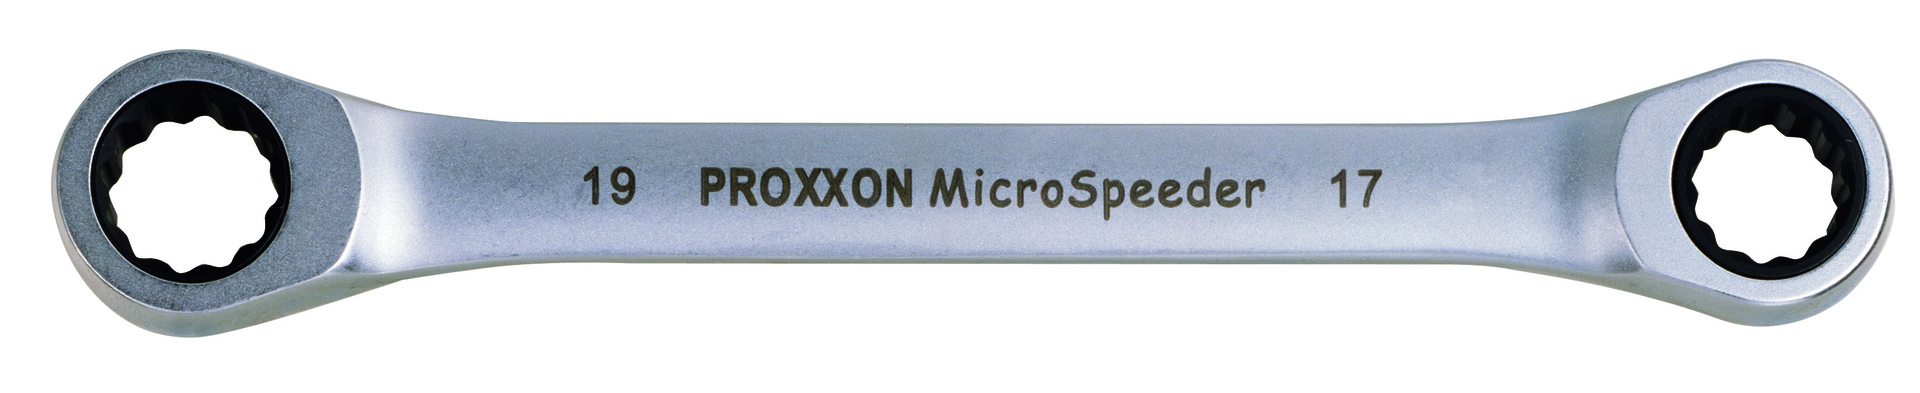 Micro-Speeder Ratschenschlüssel 8x9mm